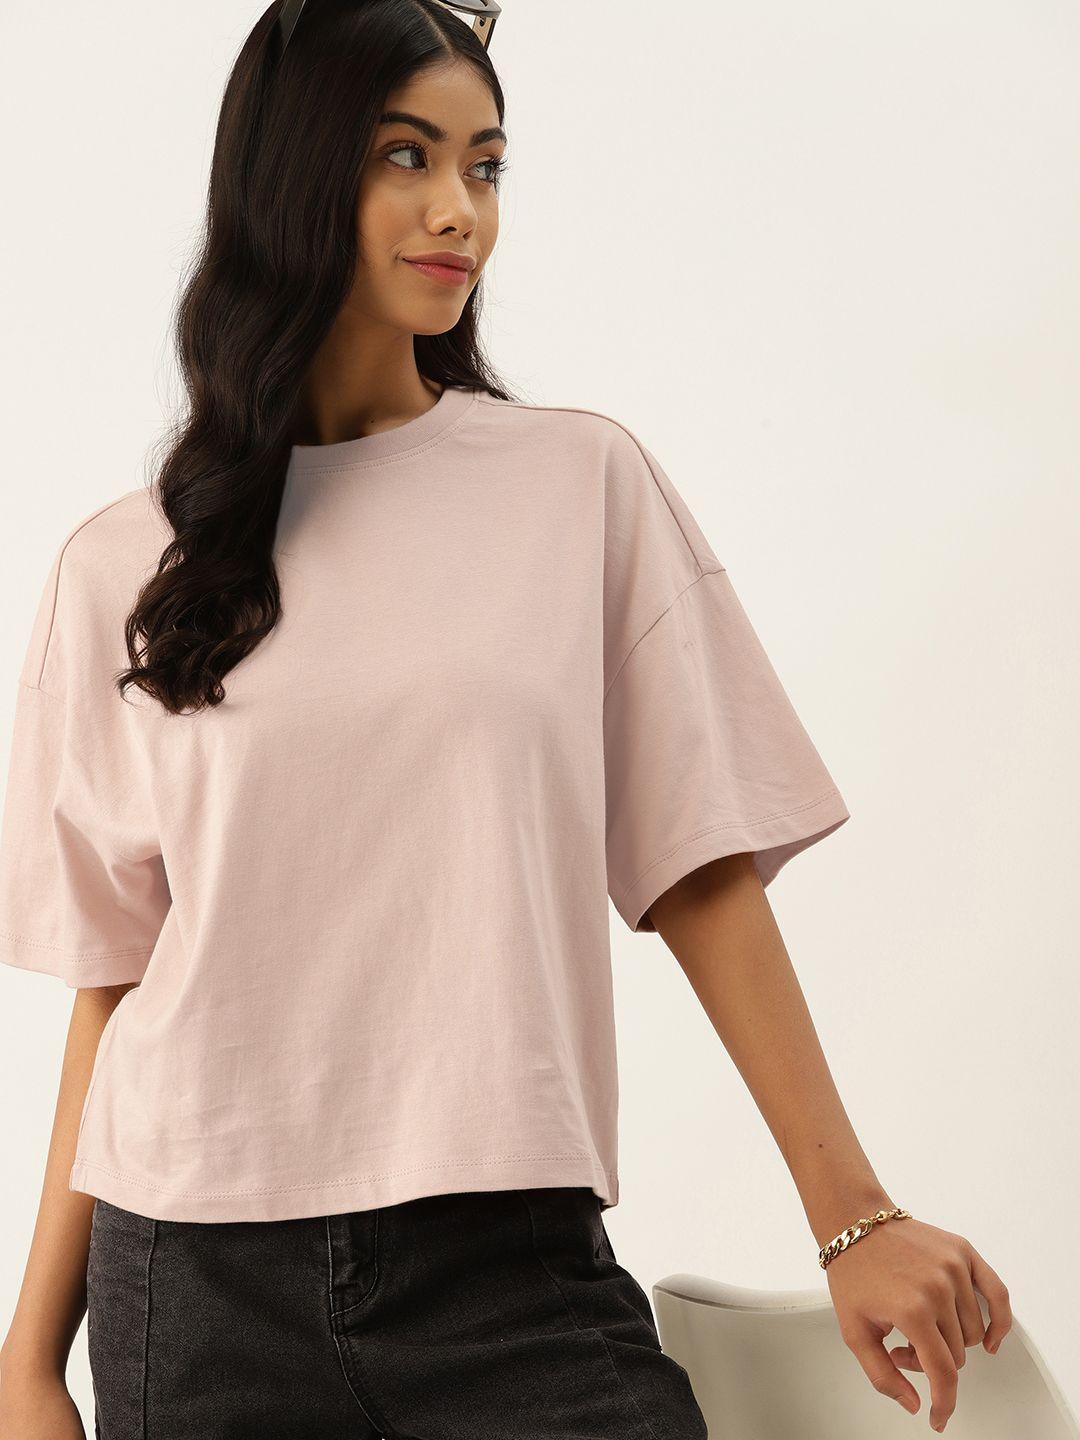 dressberry pure cotton t-shirt